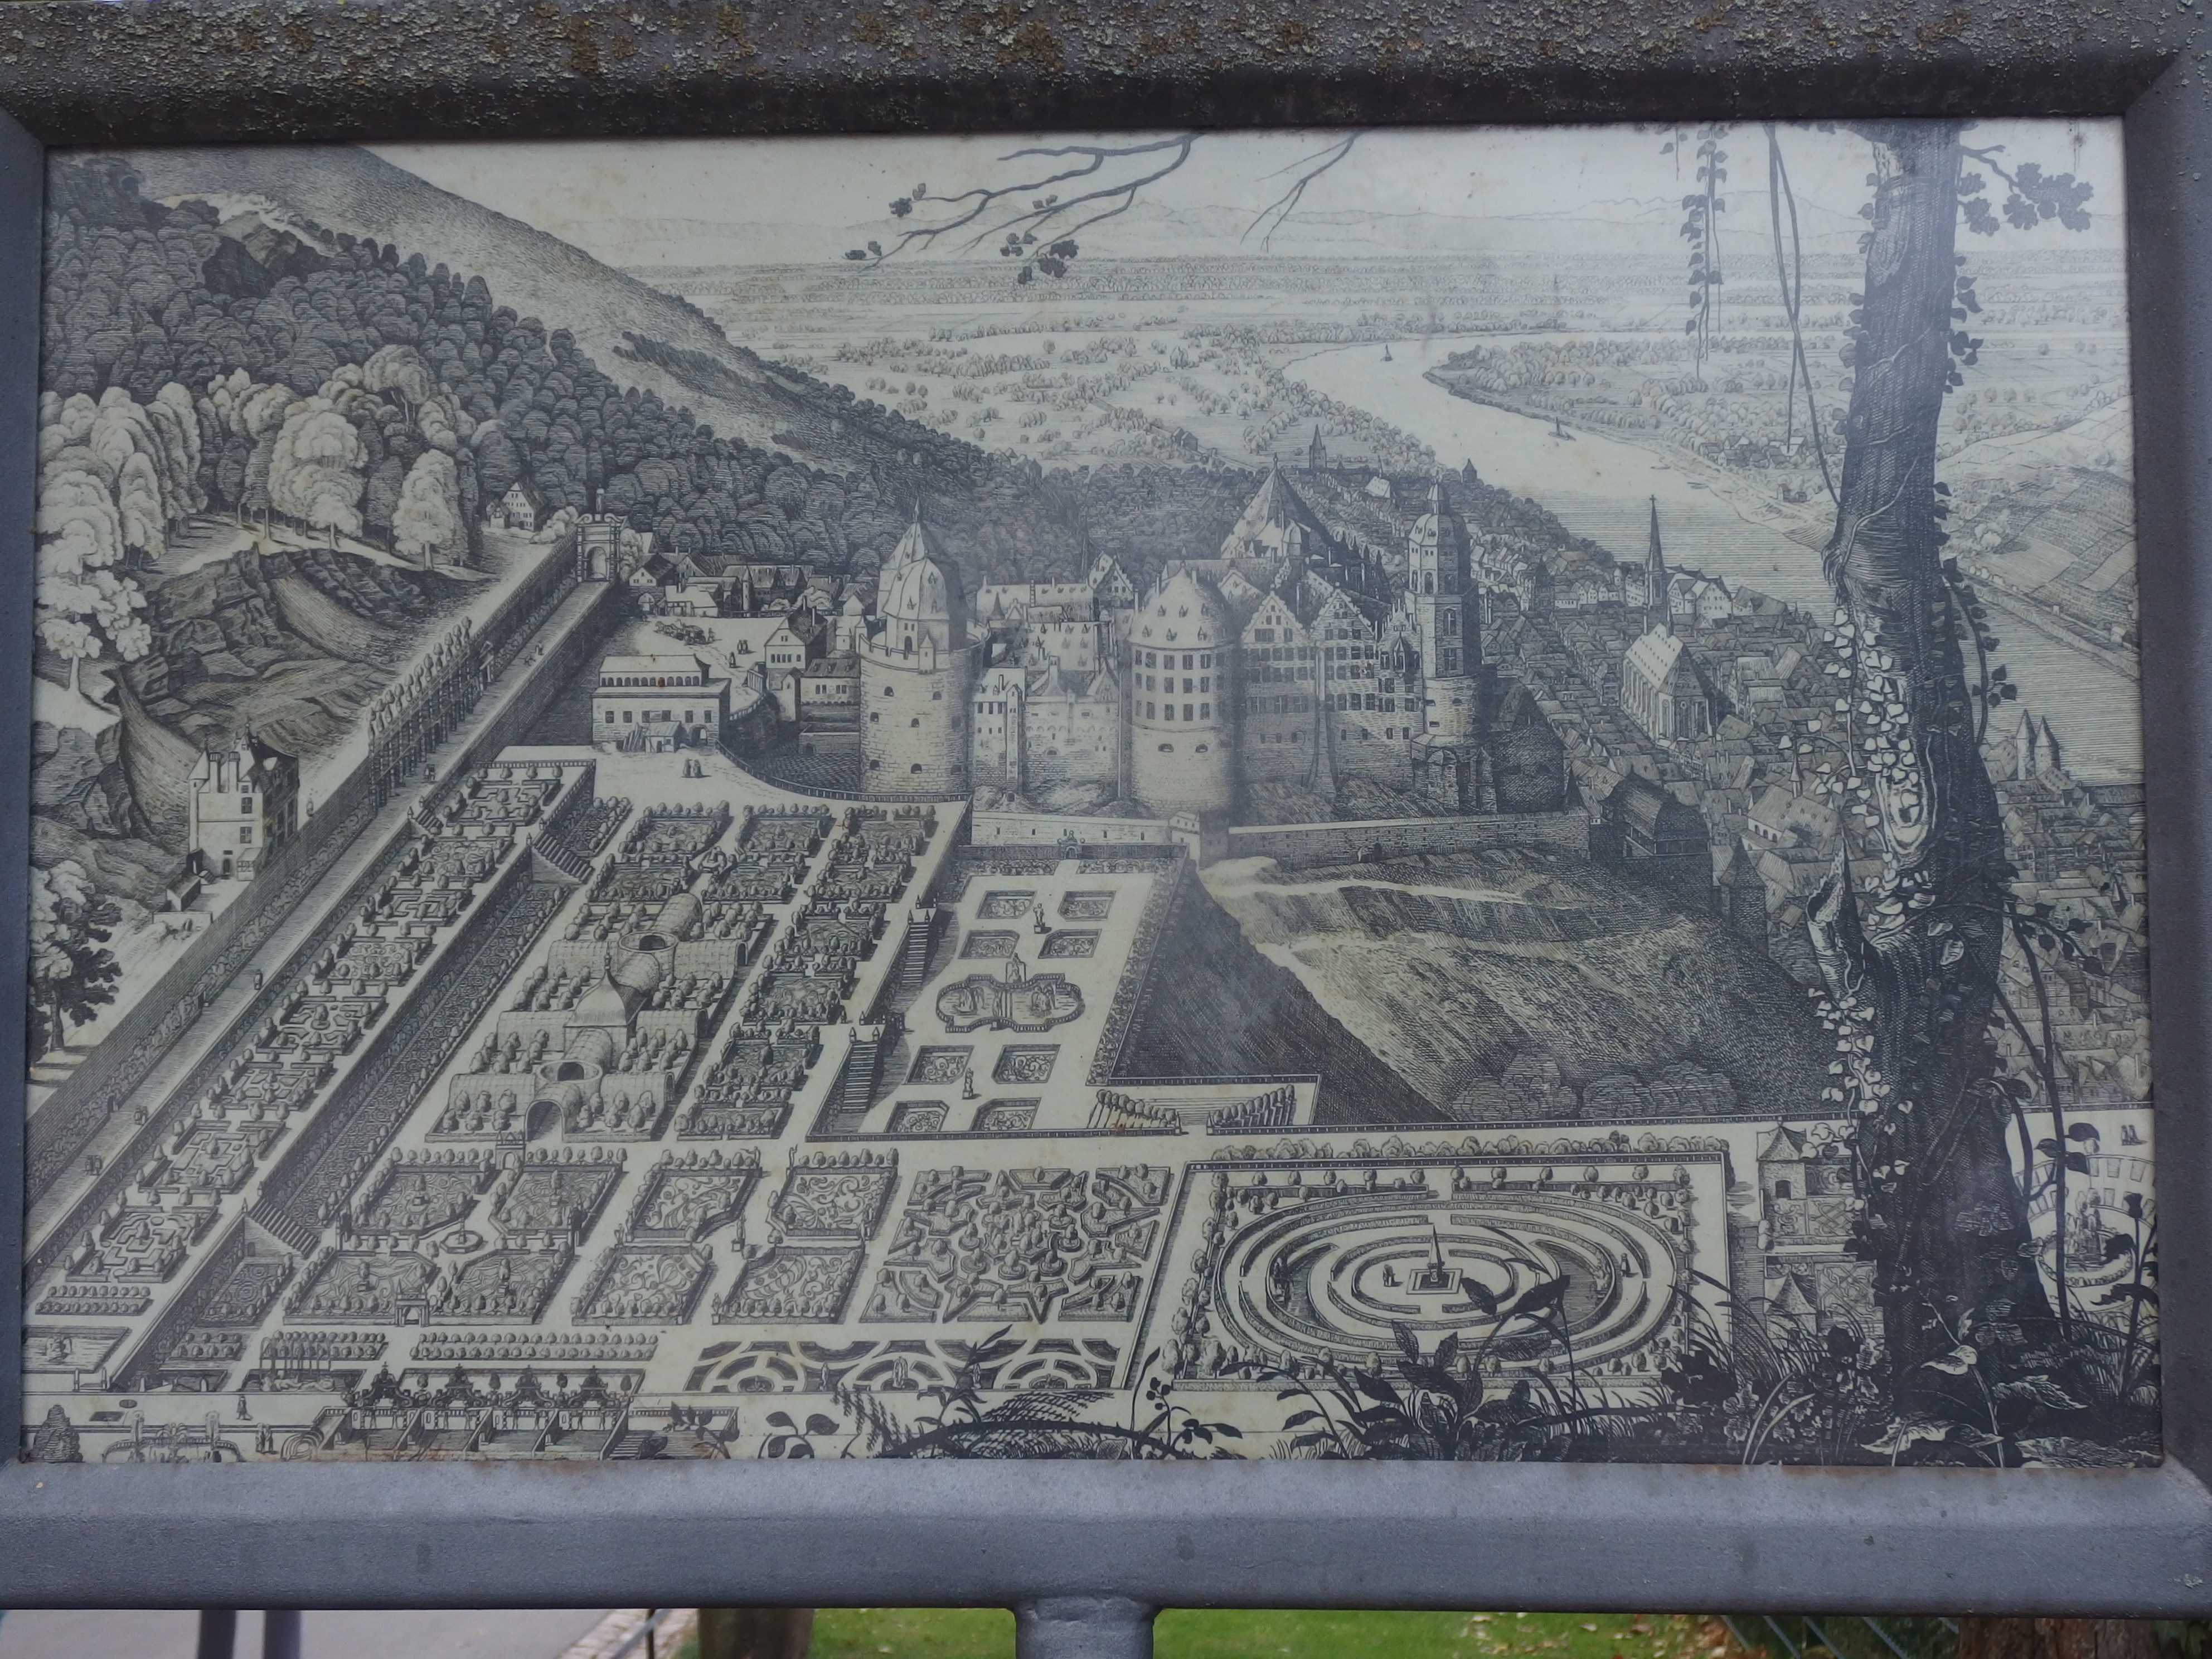 Historische Ansicht auf einer Tafel im Schloßgarten